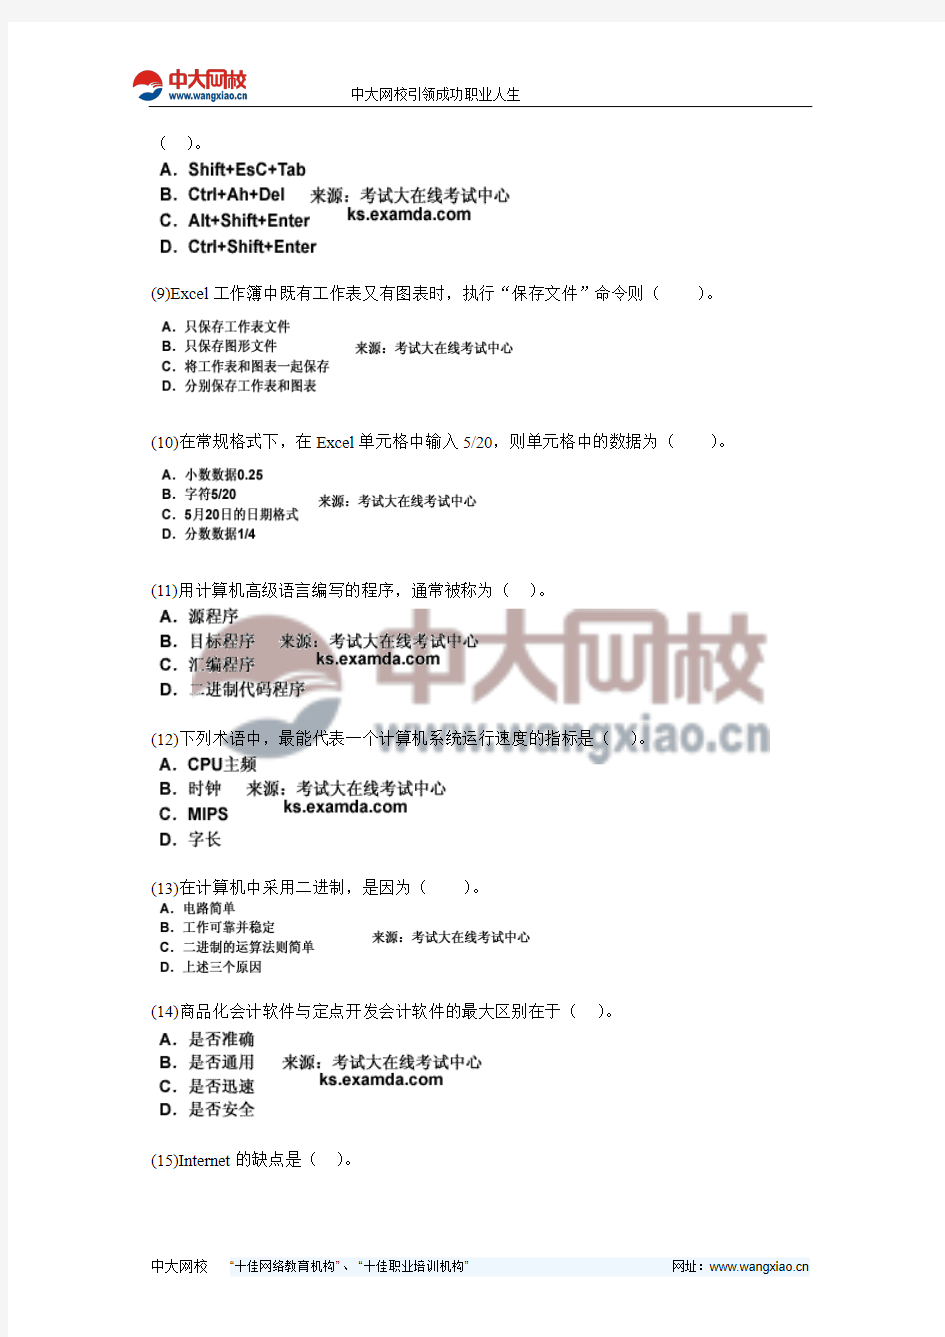 北京市2011年会计从业考试《初级会计电算化》命题预测试卷(4)-中大网校